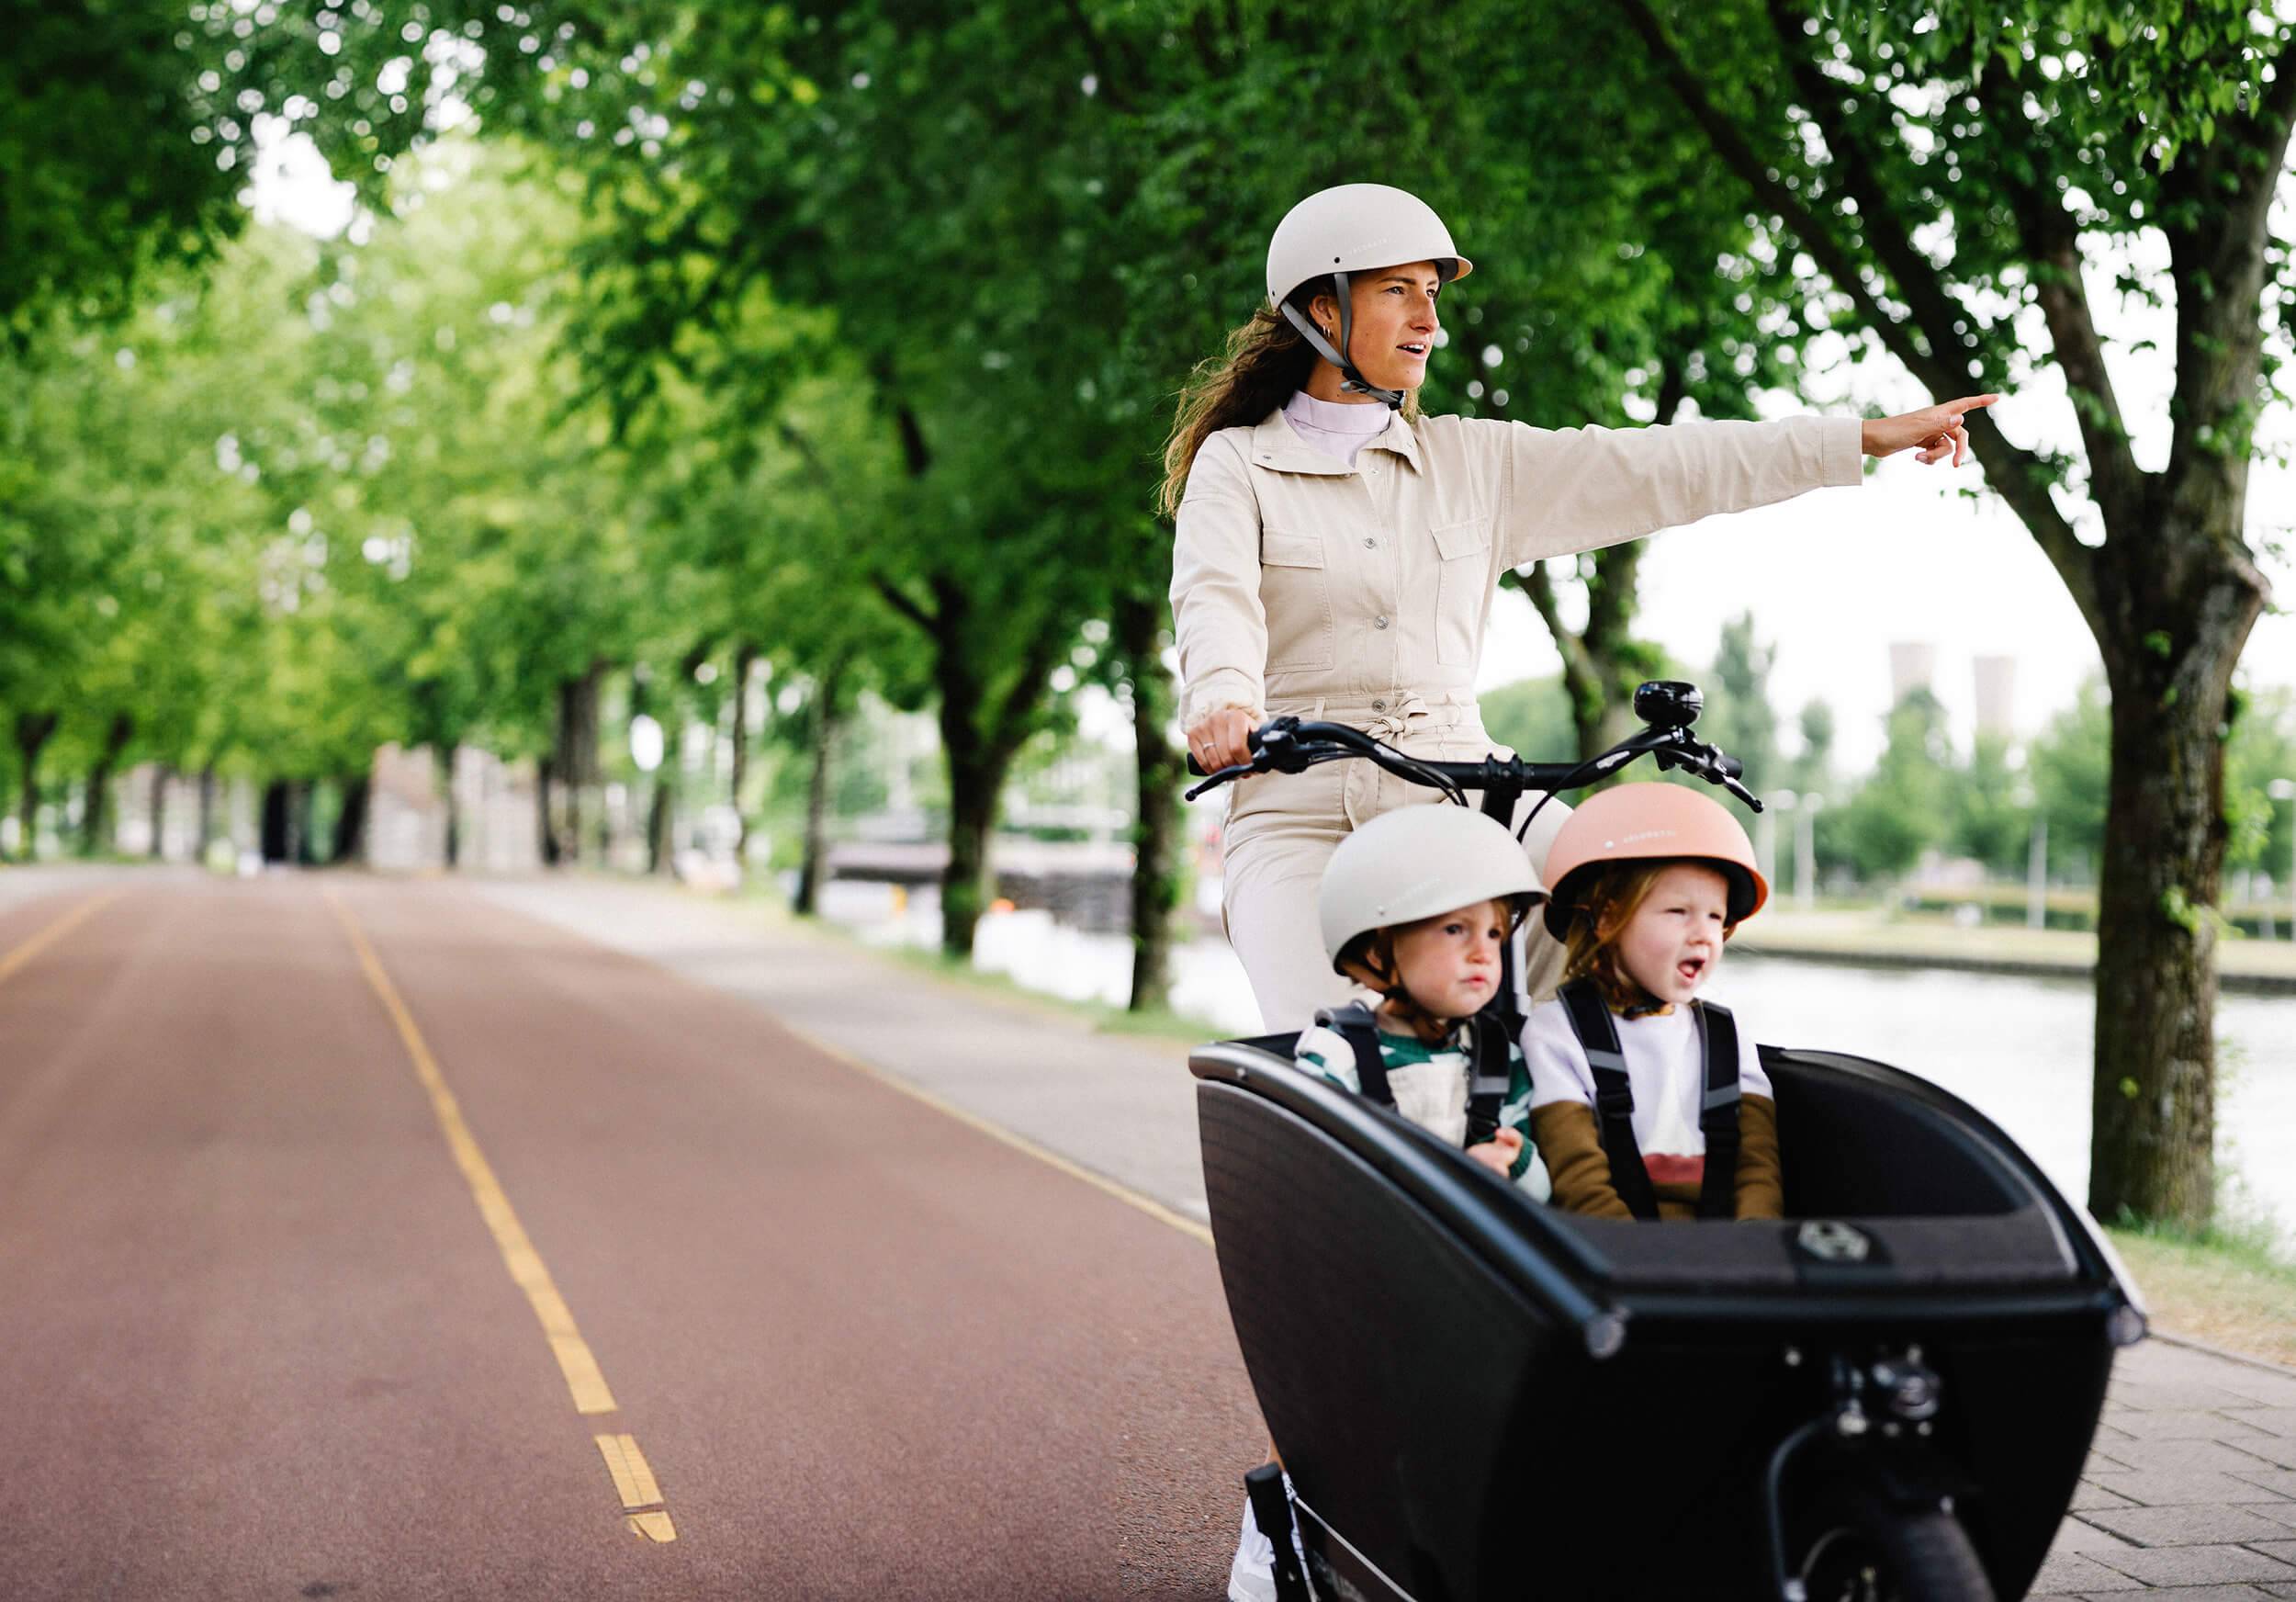 Frau mit zwei Kindern auf Lastenrad auf Radweg nahe Wasser zeigt auf etwas